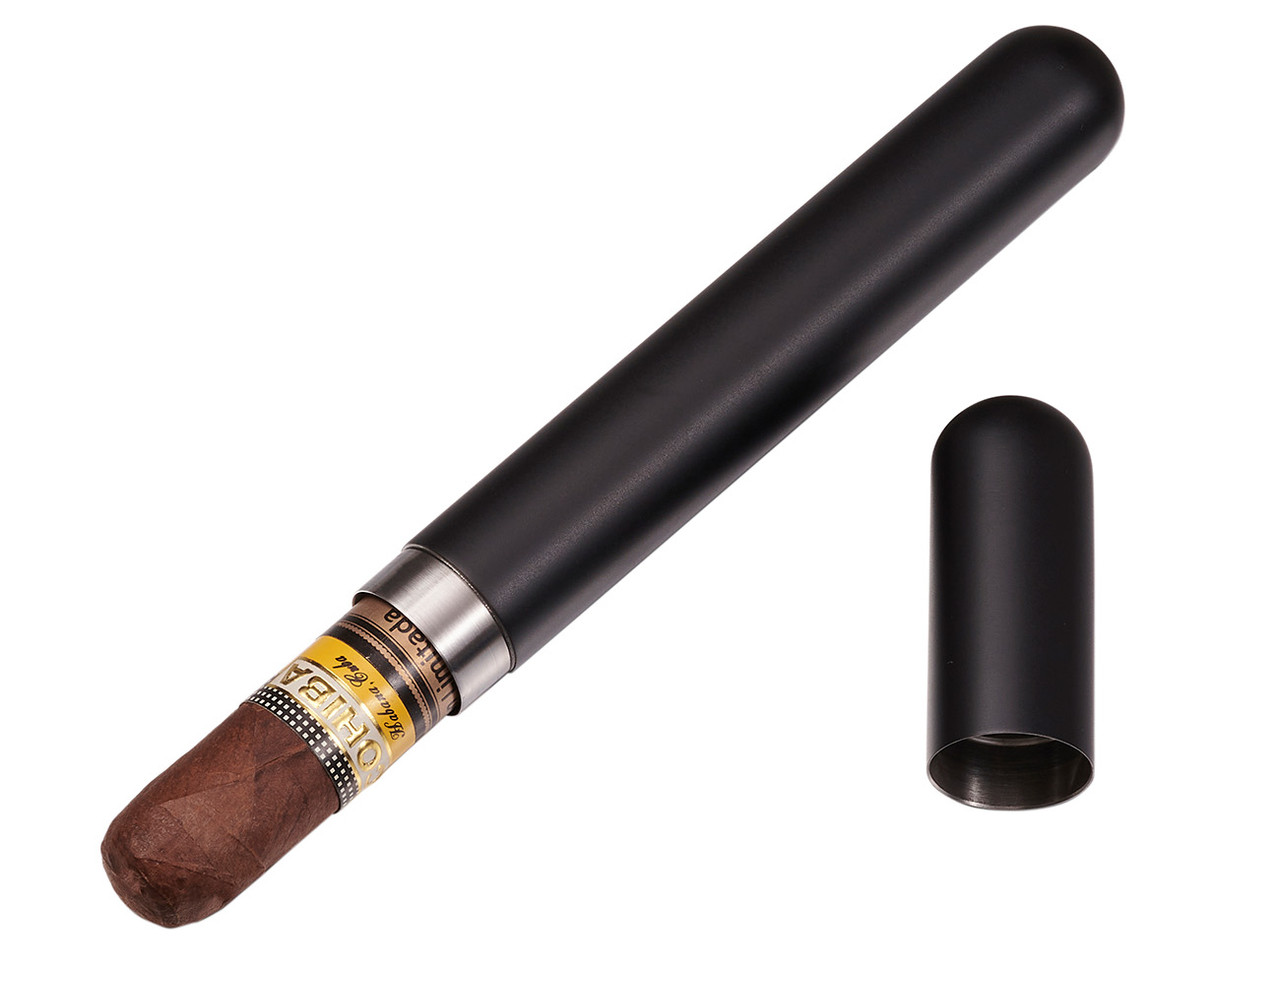 Visol Delta Satin Finish Stainless Steel Cigar Tube